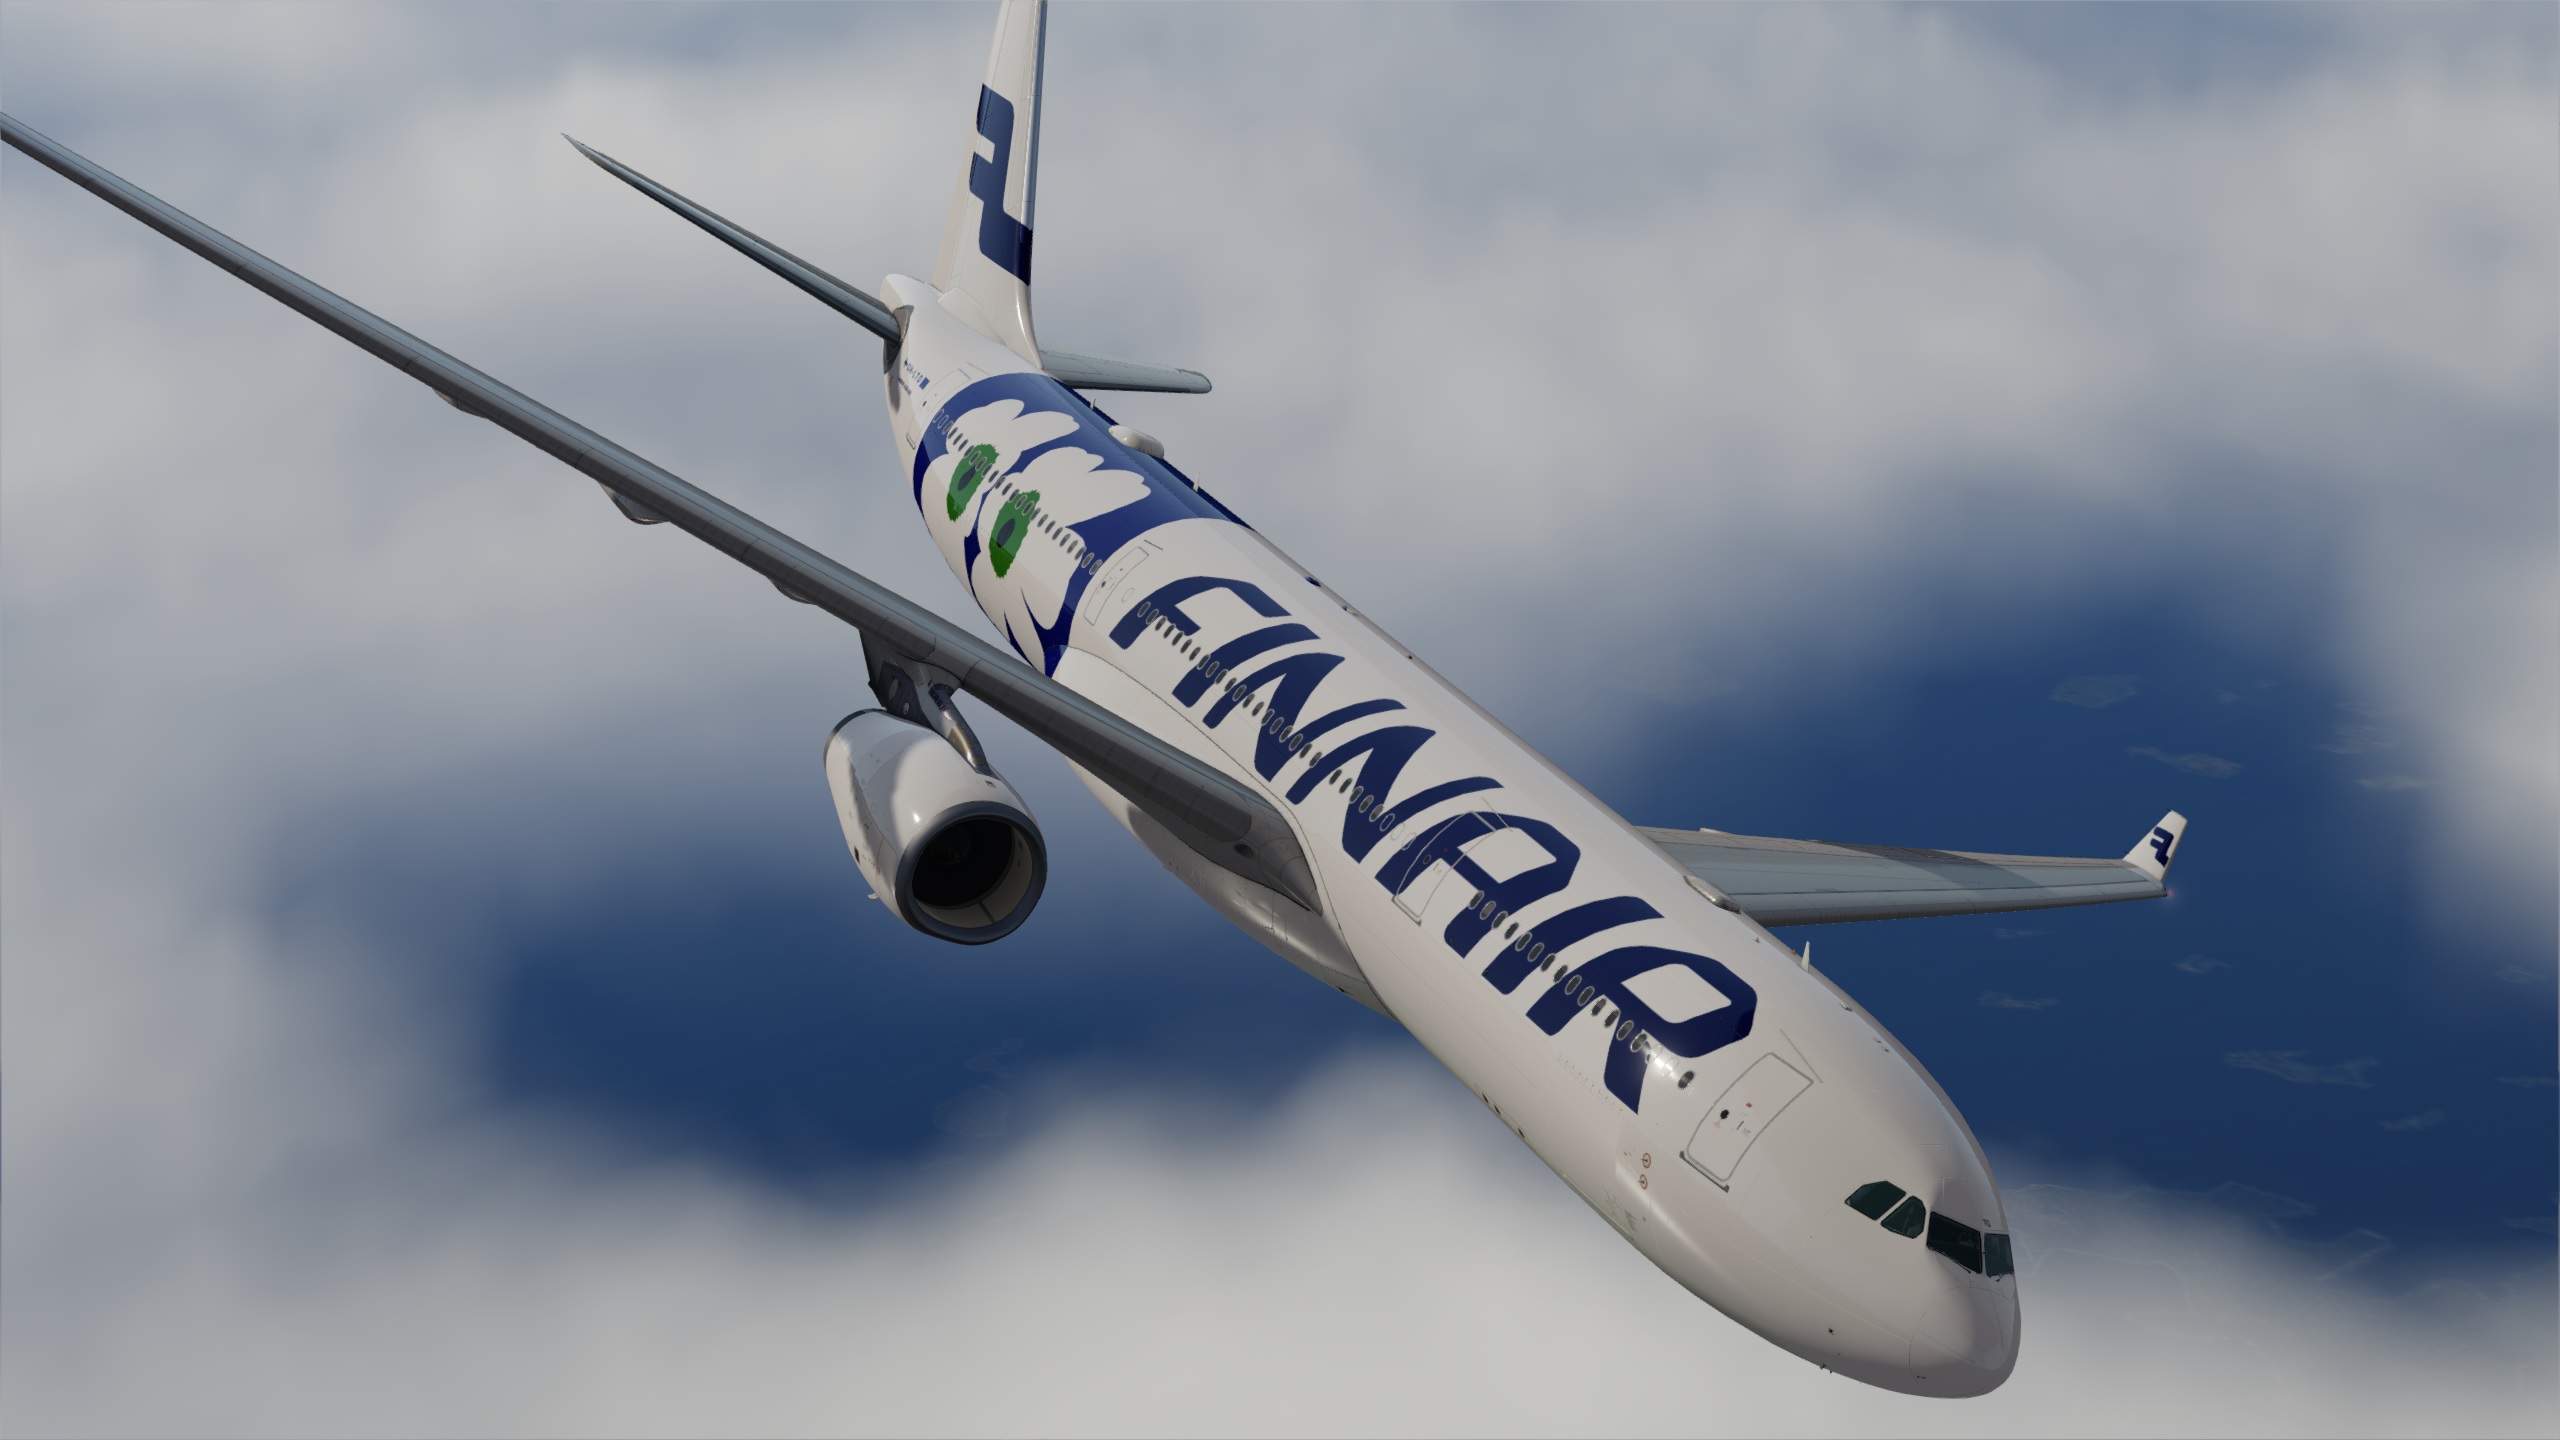 Finnair OH-LTO 